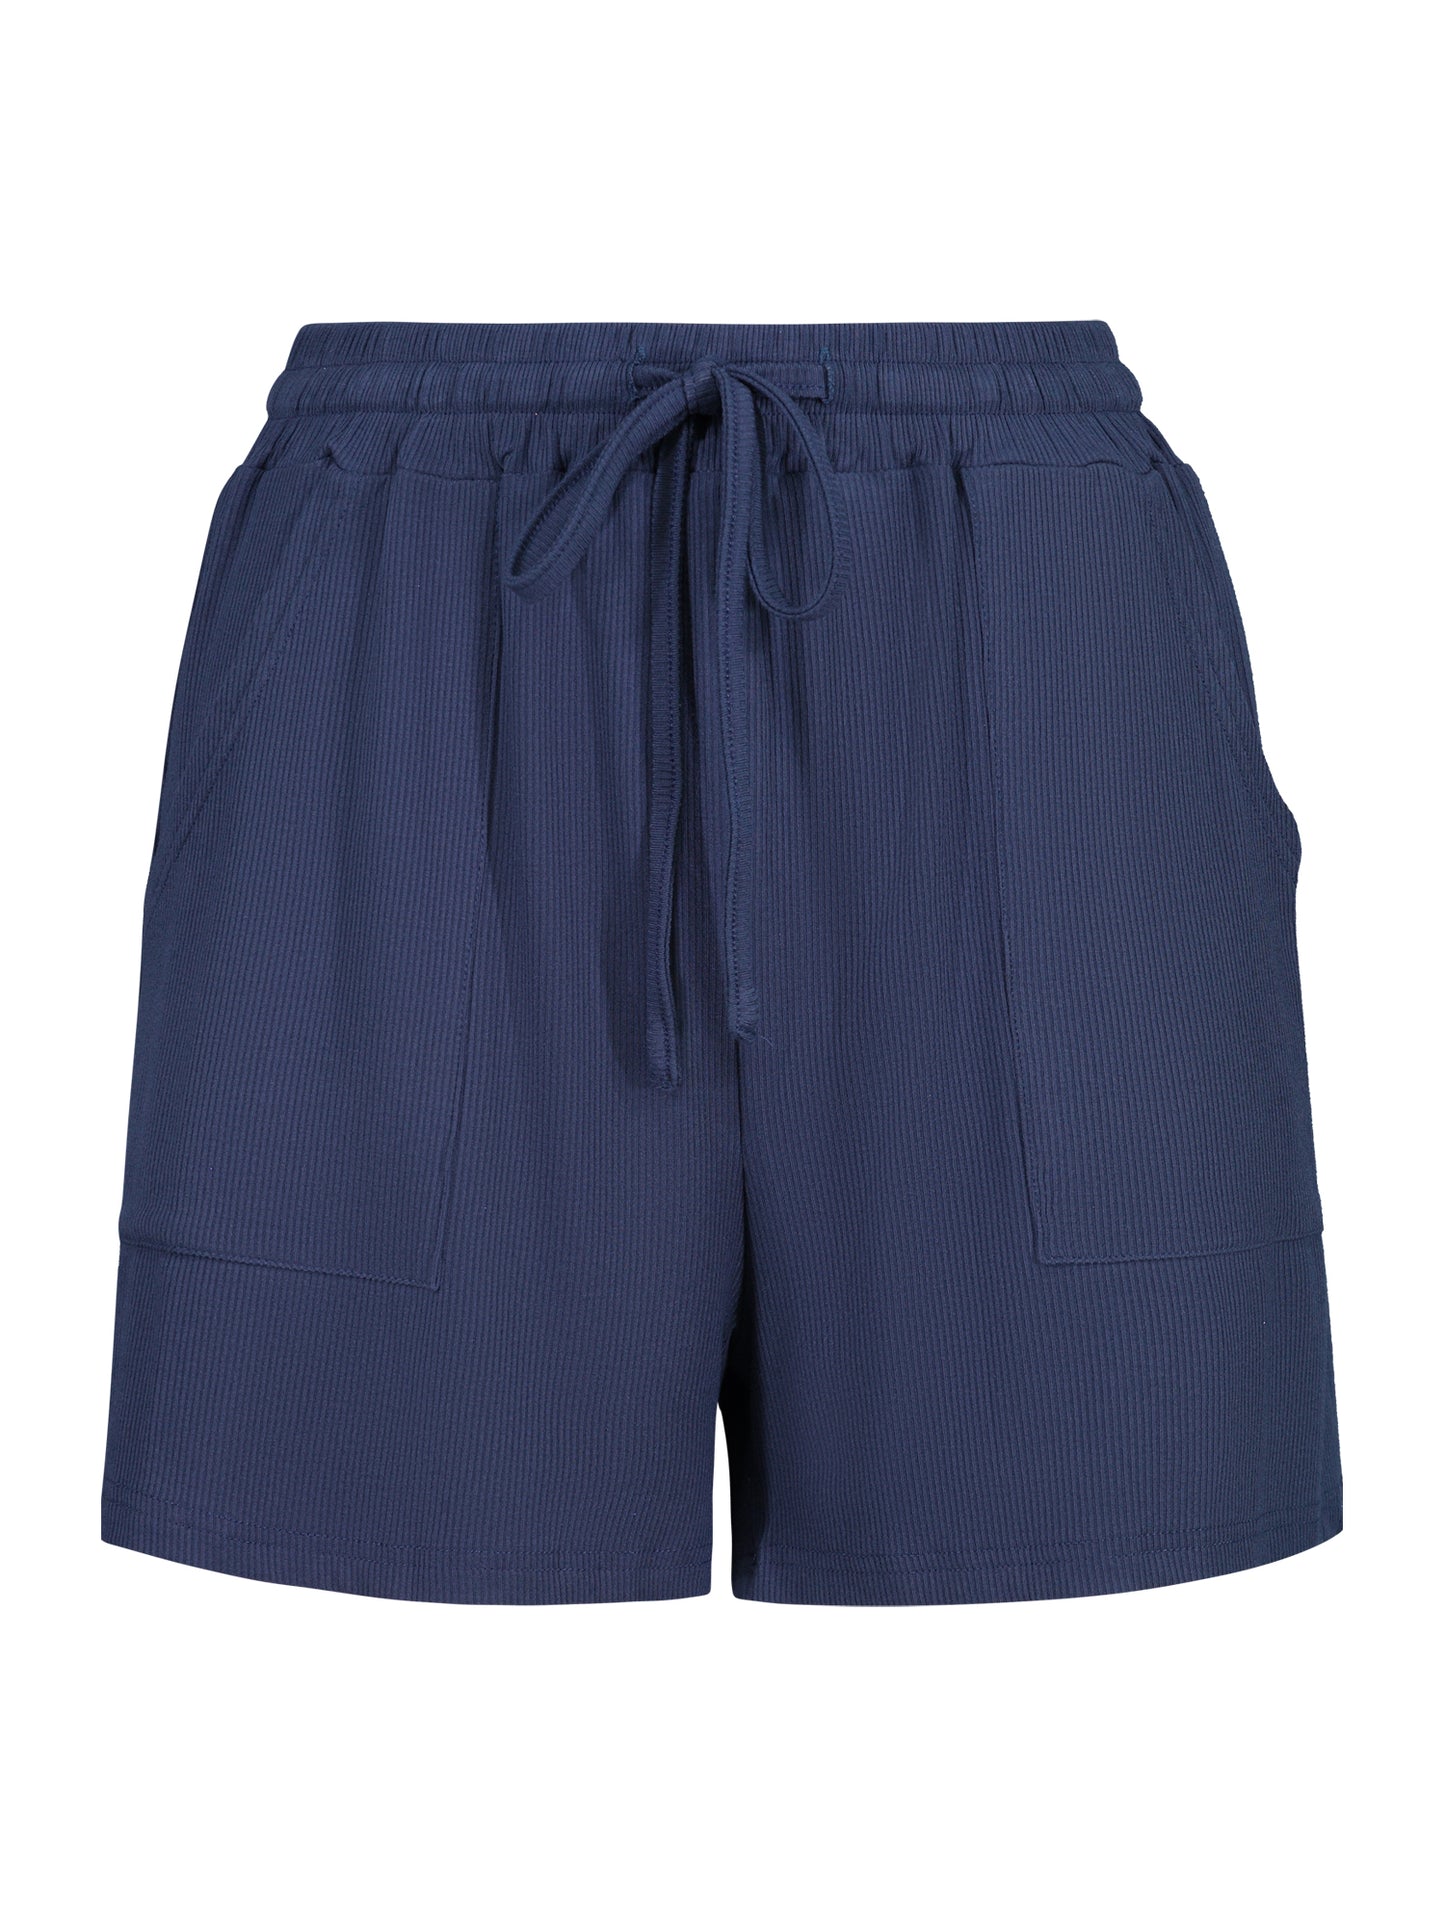 Navy Tank Top & Shorts Set | 8LACK Clothing